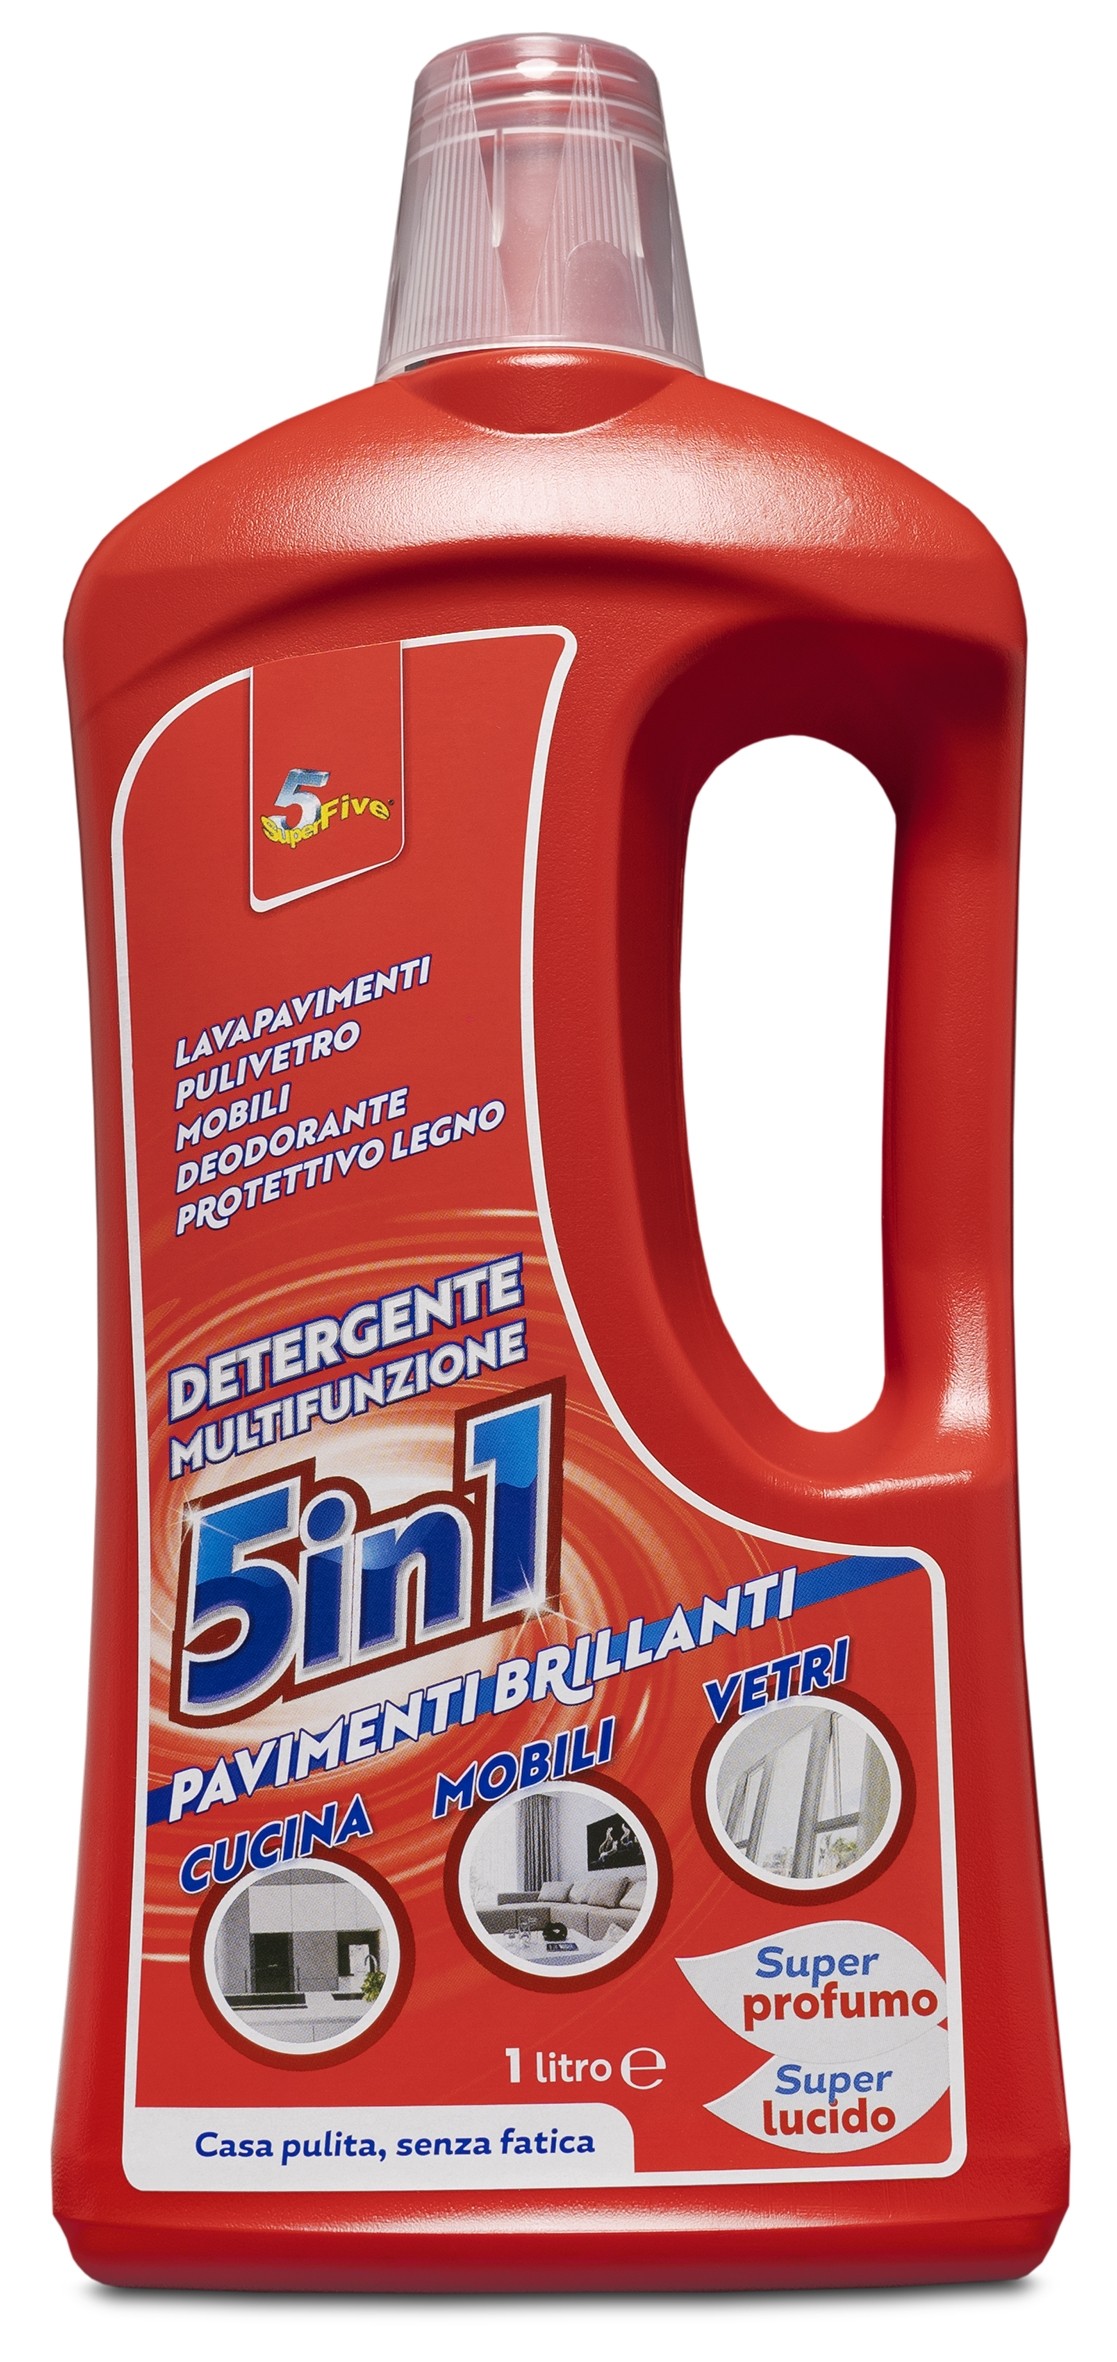 Superfive  Detergente Multi Funzione 5 in 1 - Detergenti - Casa